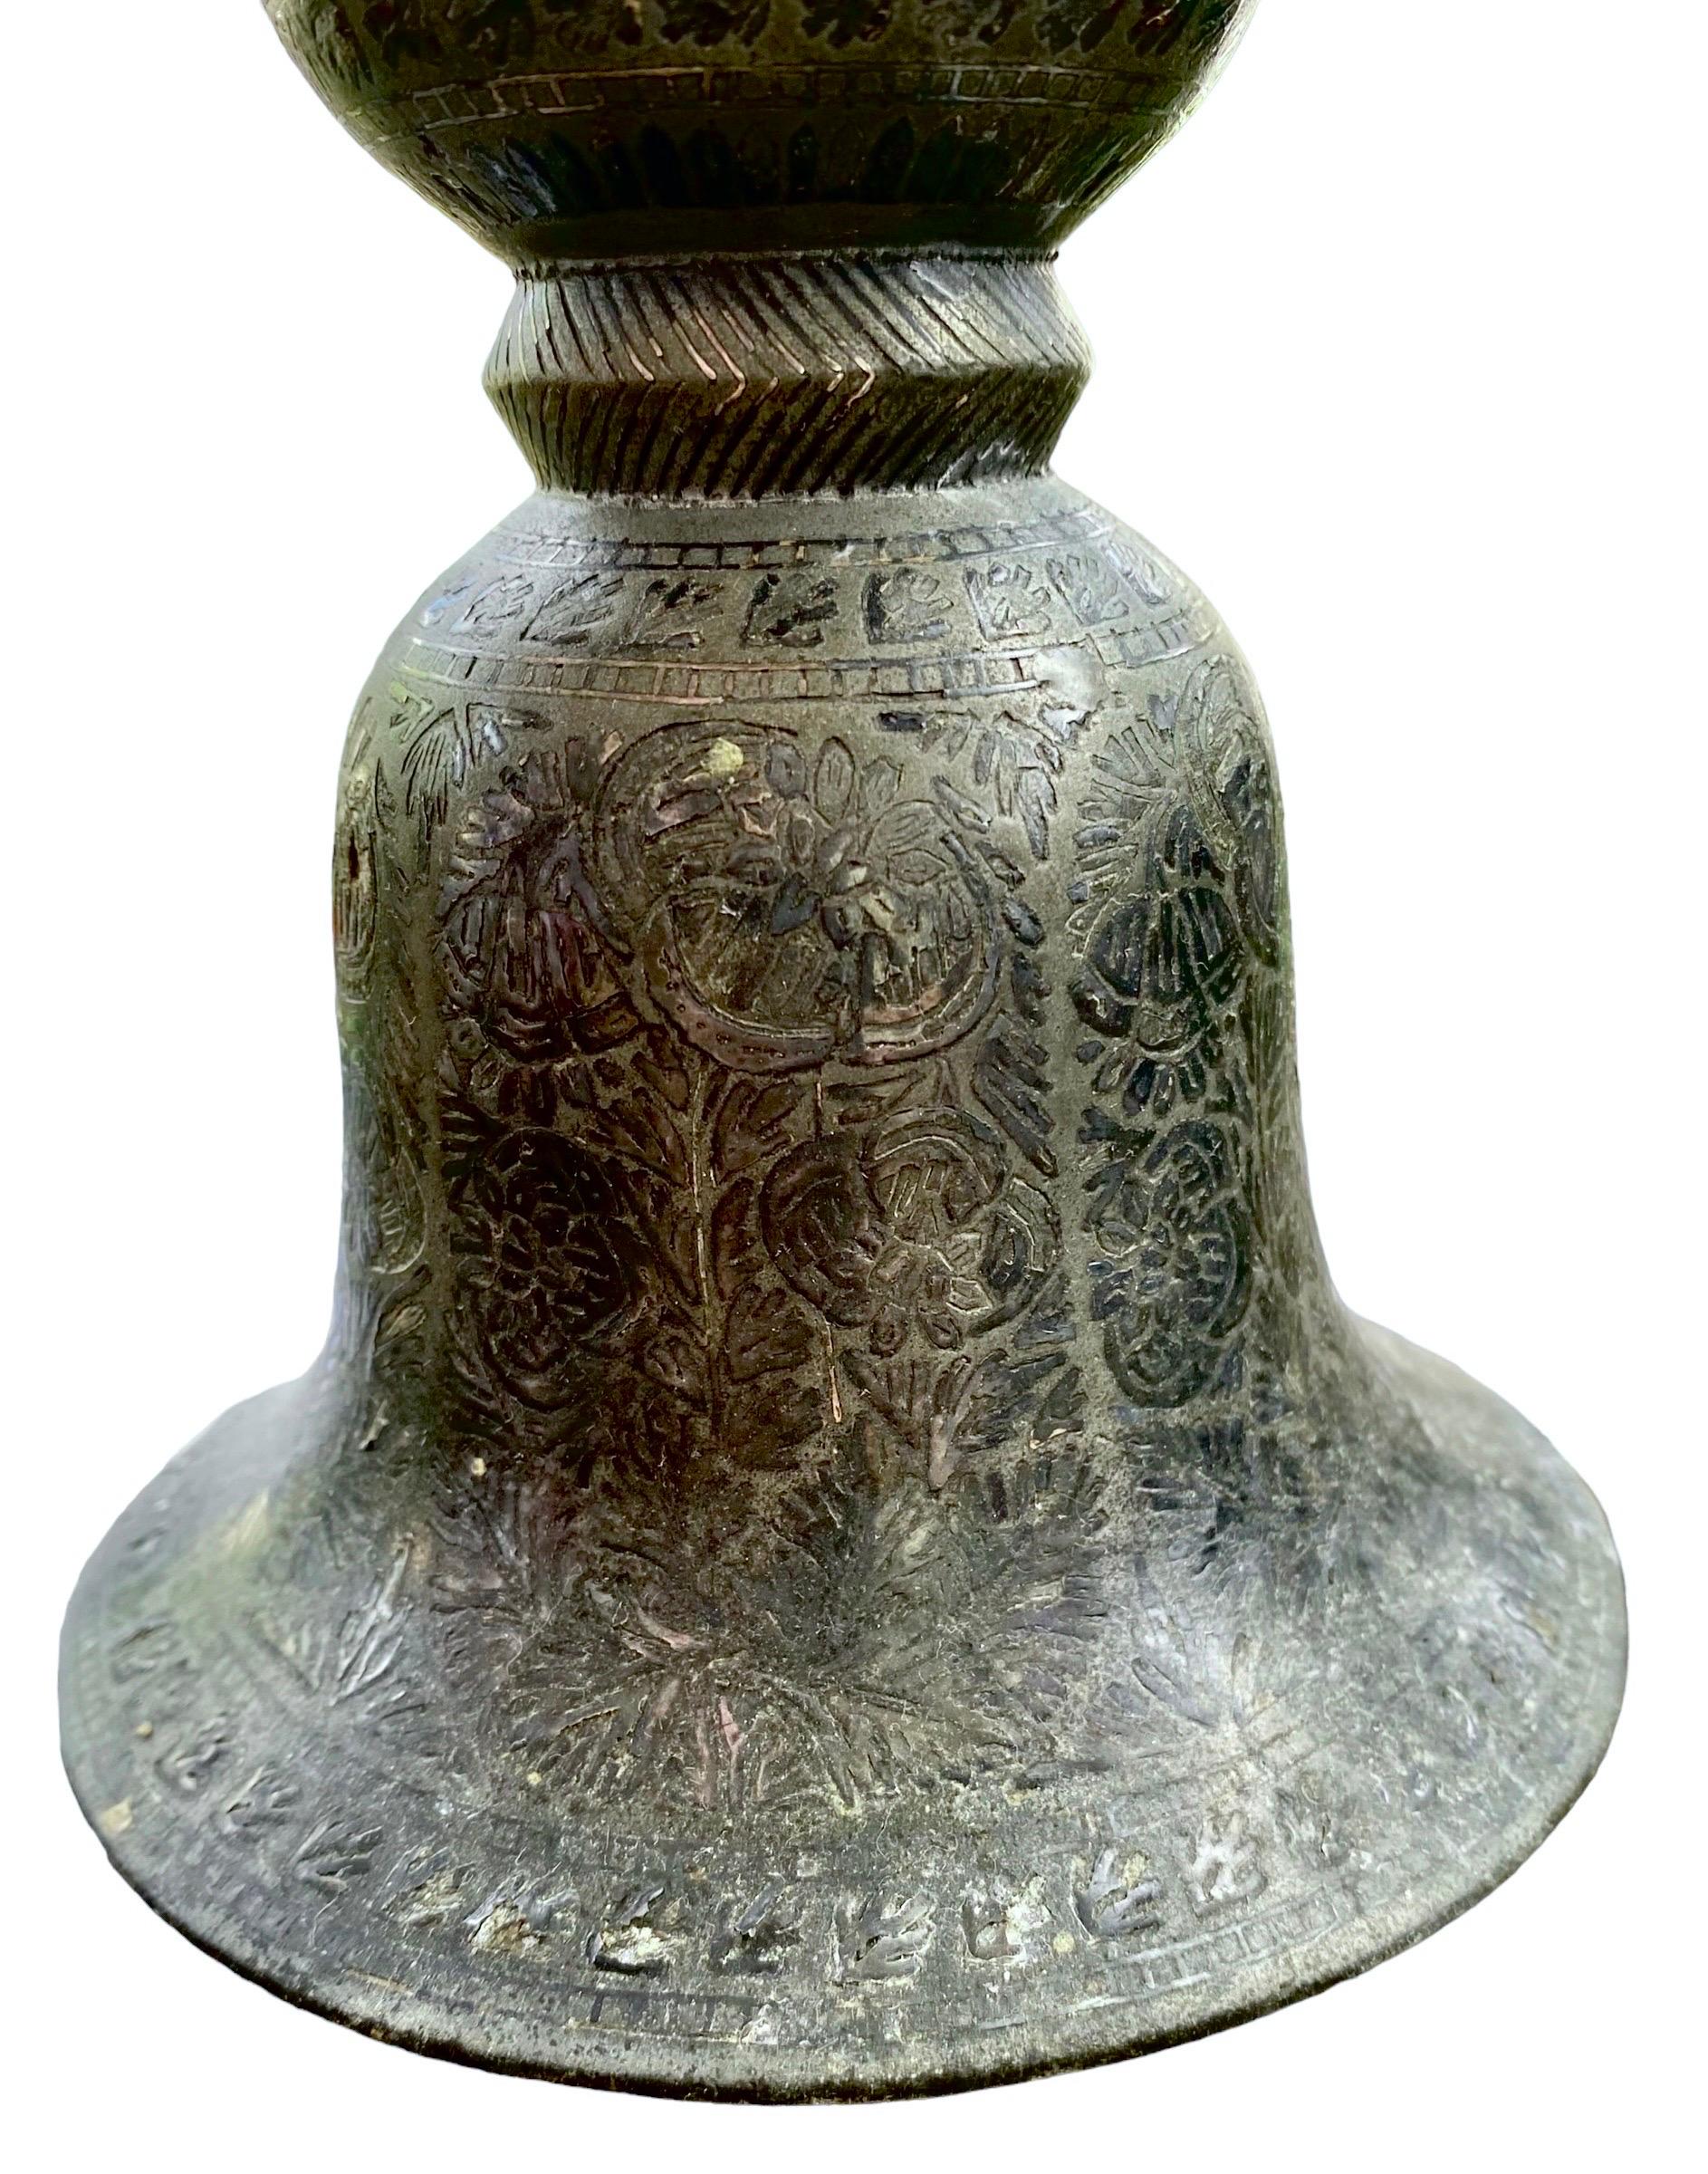 Cet antique spitoon indien en bidri (Peekdaan ou Thookadaan) est moulé en forme de double cloche opposée, l'extérieur étant décoré de réserves ovales de coquelicots stylisés, un motif courant dans la vaisselle en bidri. Originaire de Bidar, Deccan